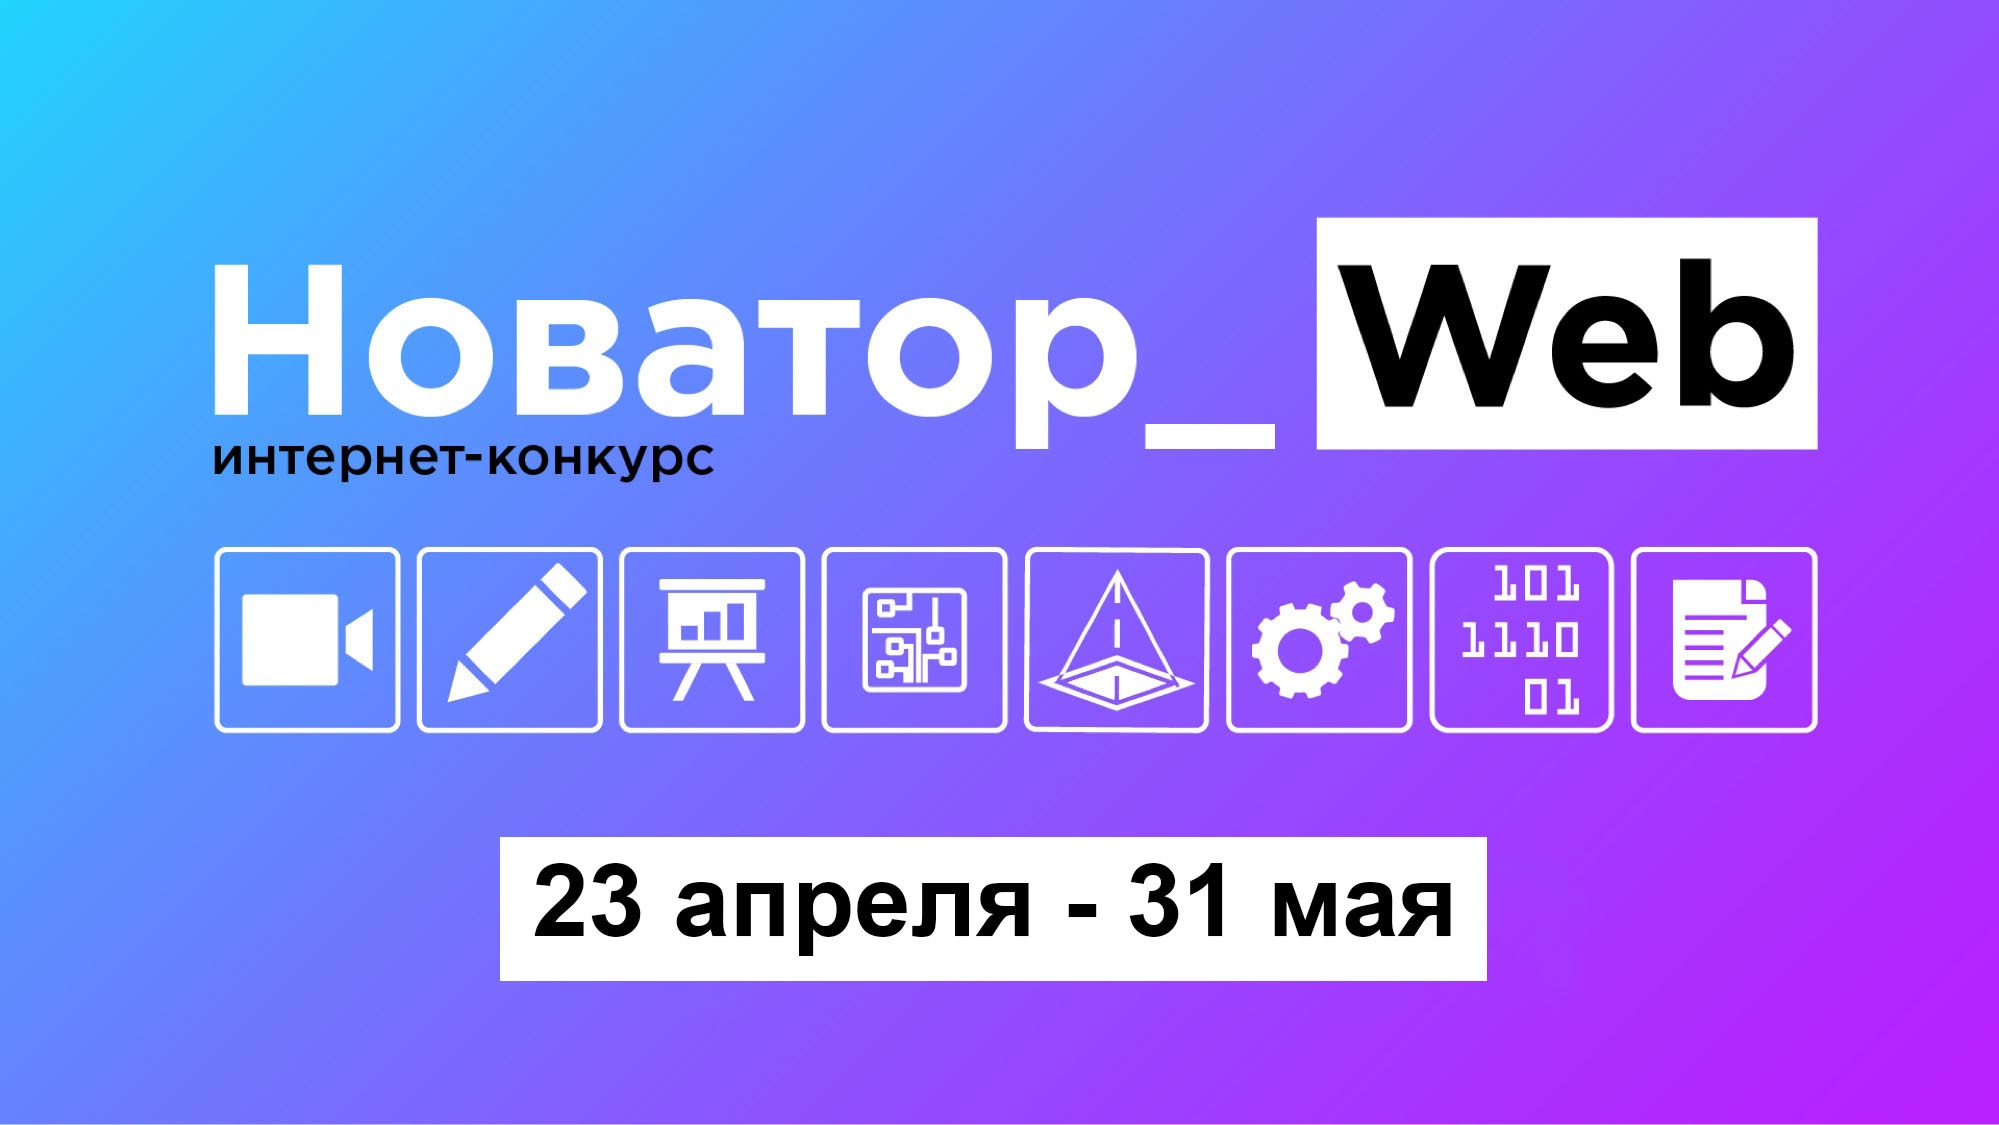 Для пензенских школьников стартовал конкурс «Novator_Web 2.0»